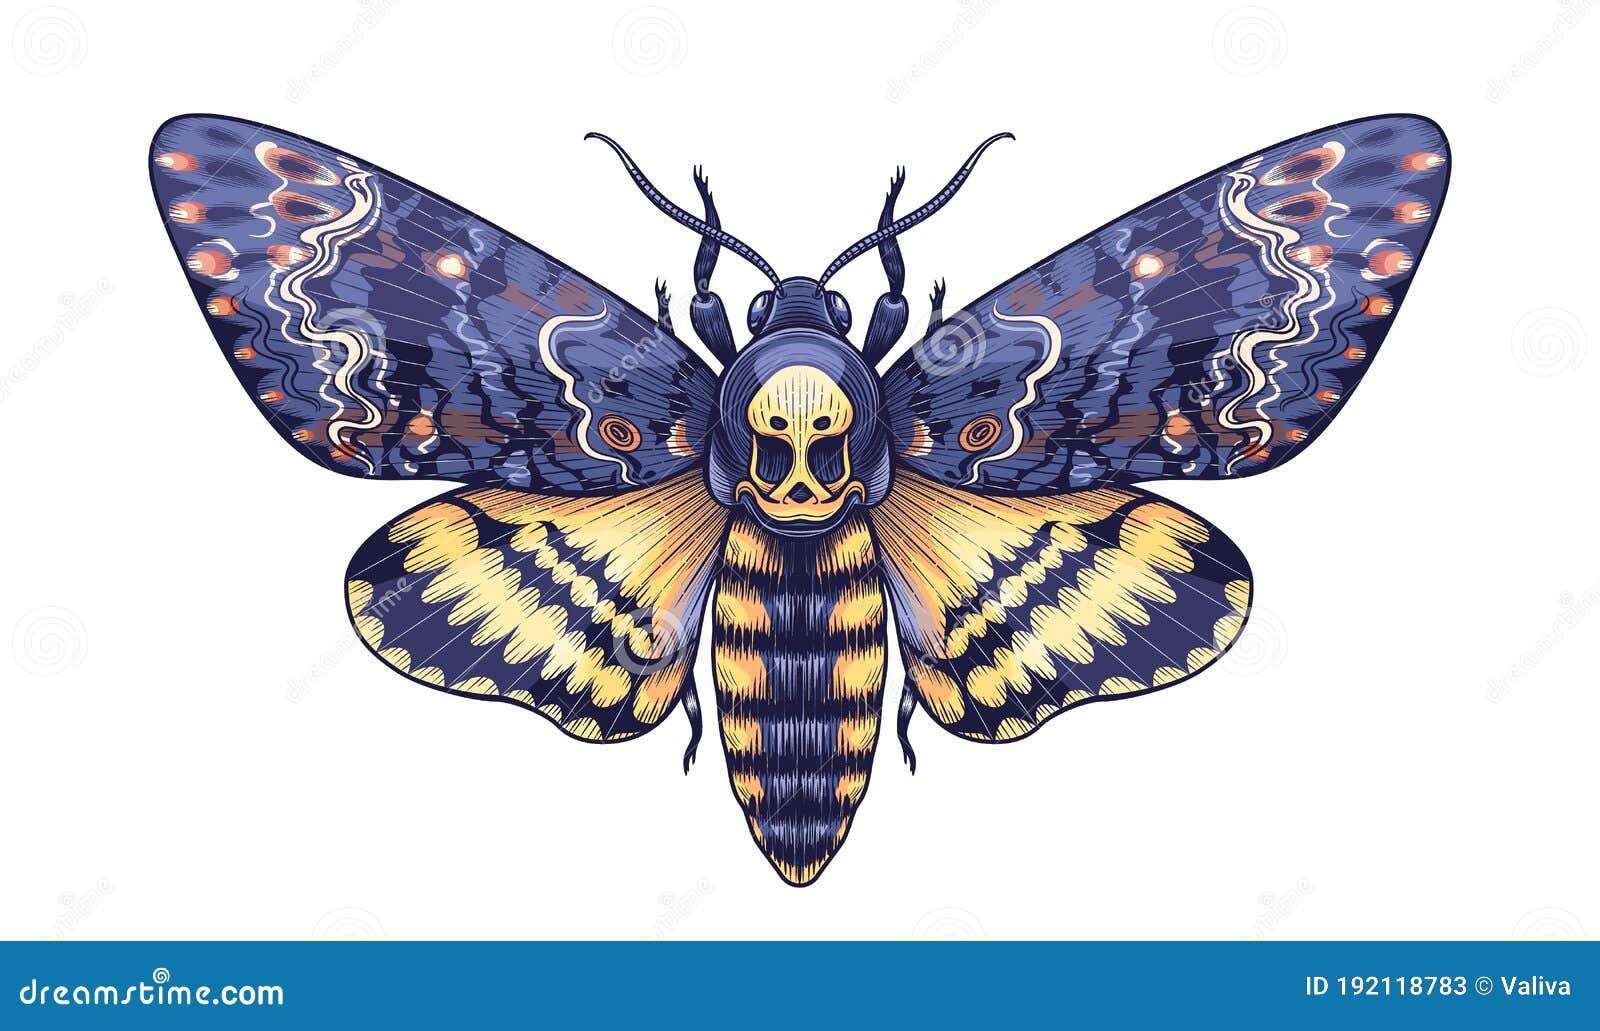 200 Death Moth Tattoo Illustrations RoyaltyFree Vector Graphics  Clip  Art  iStock